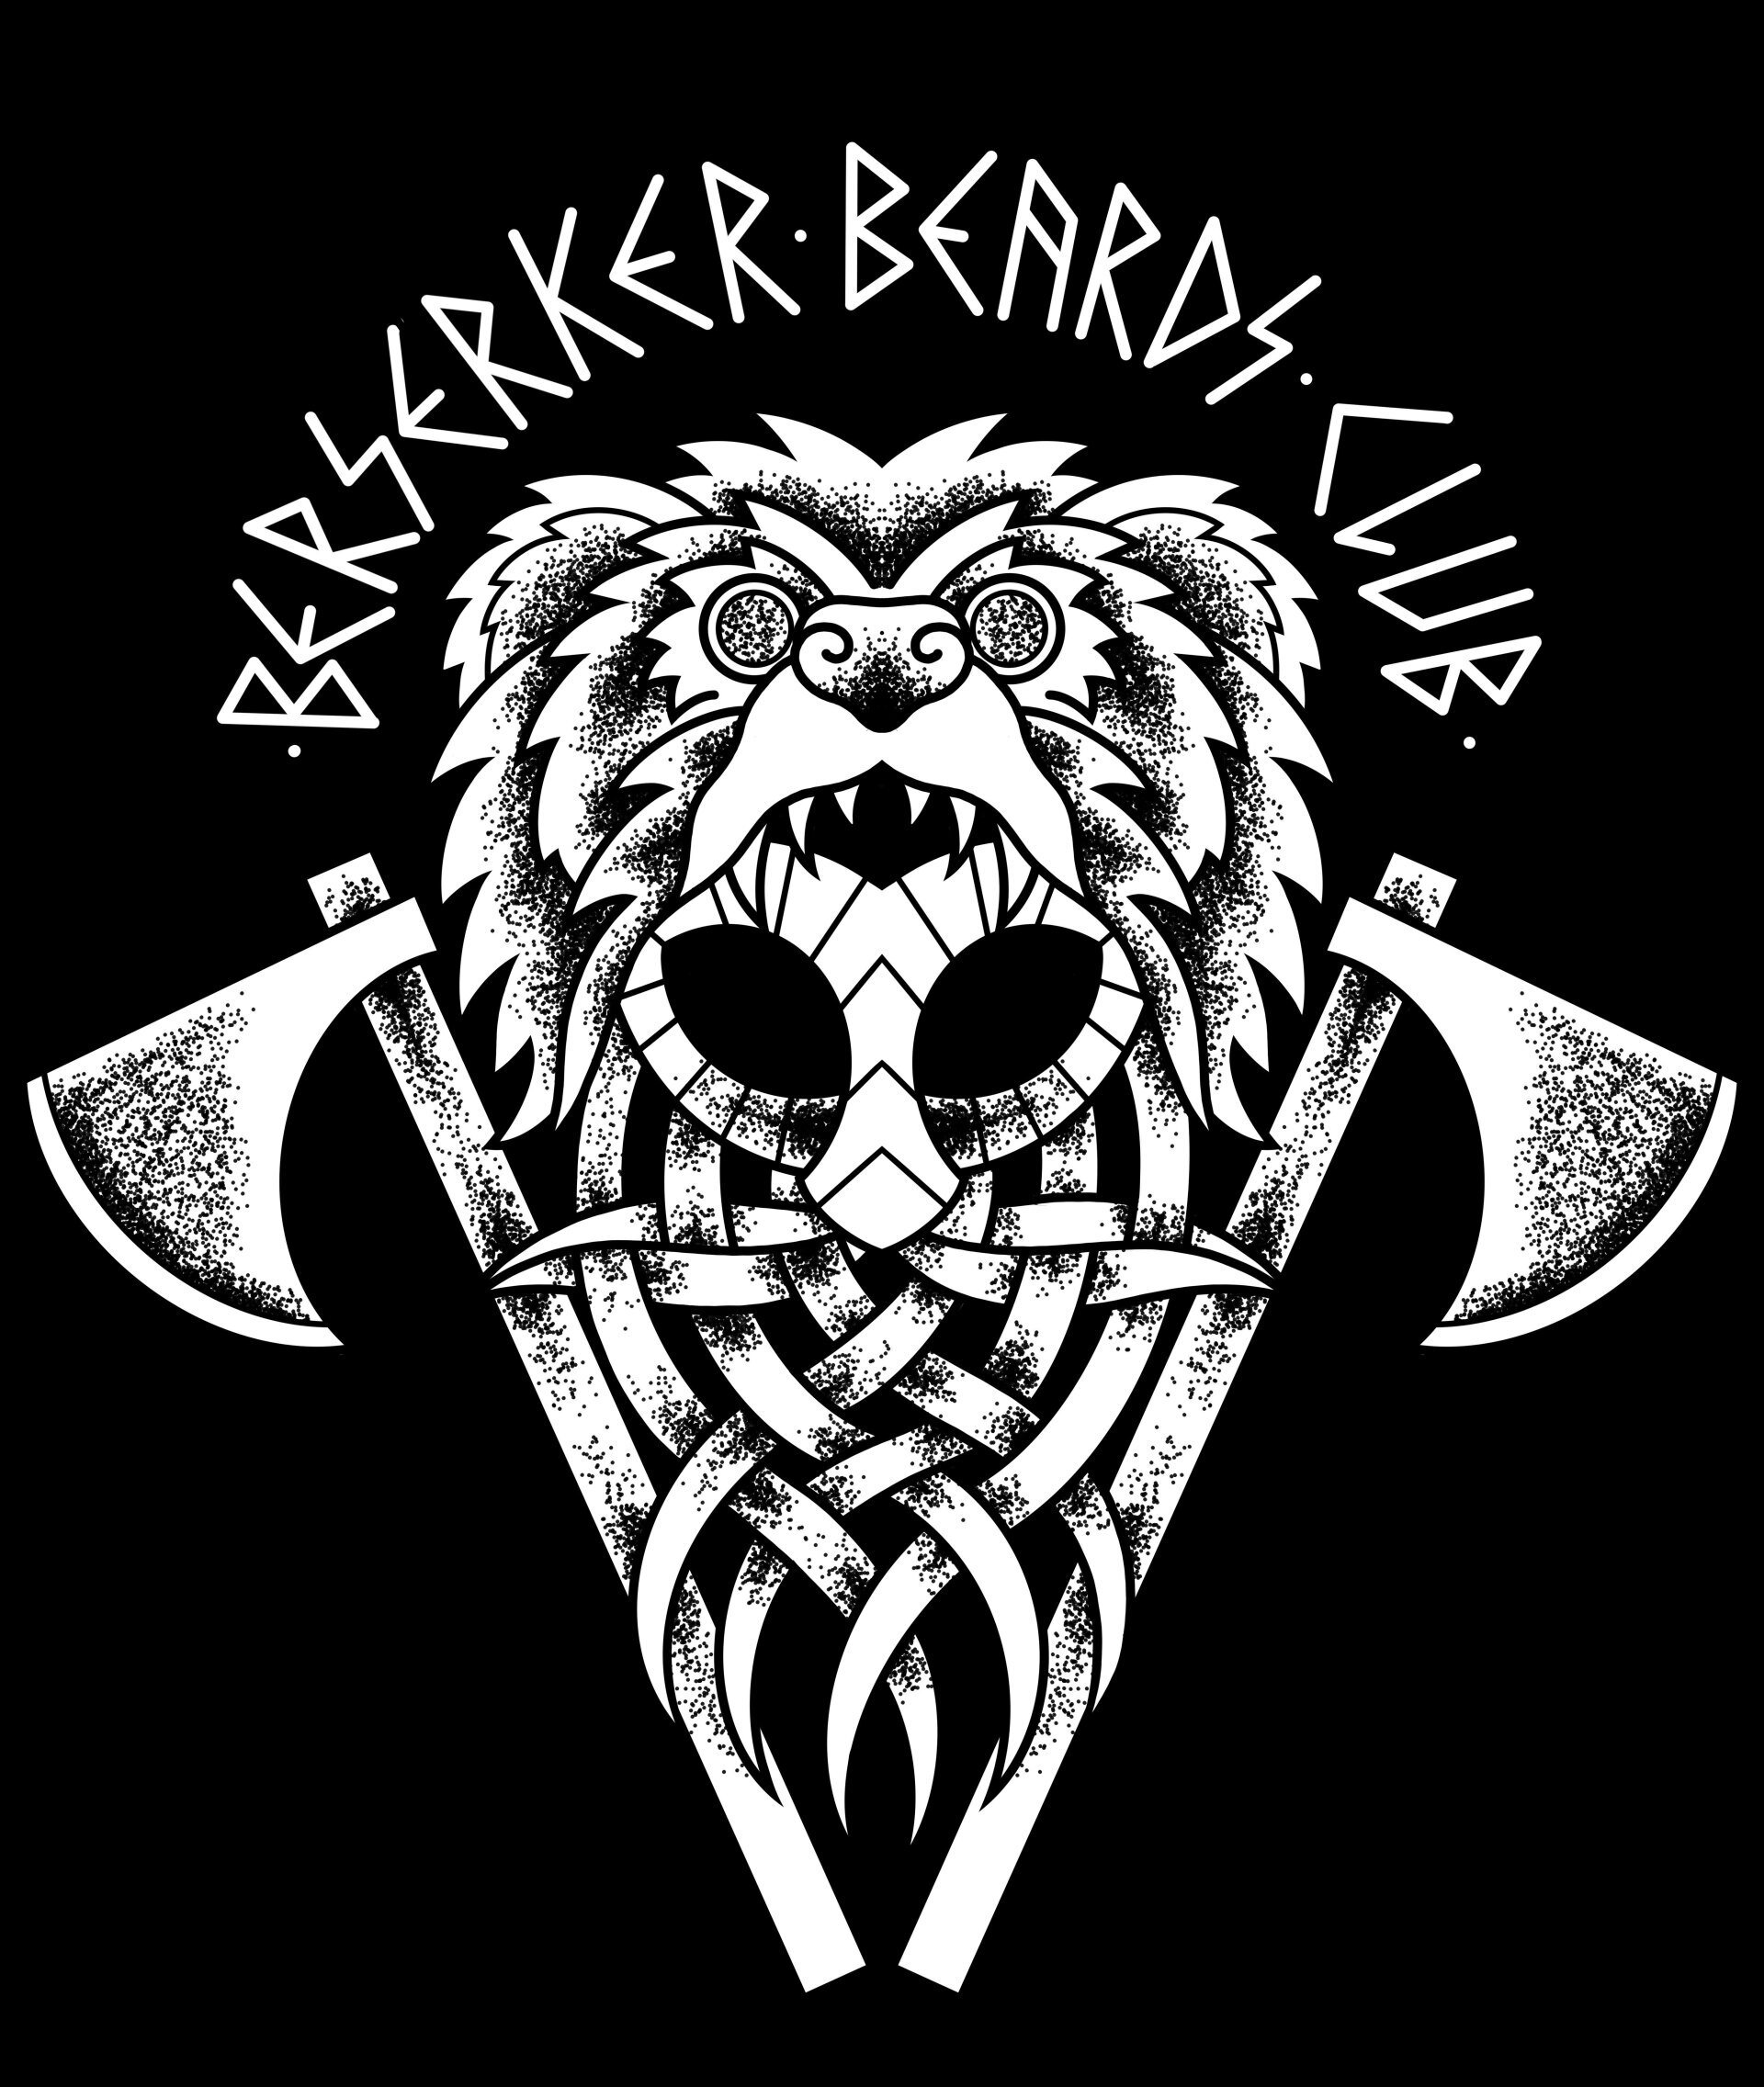 Berserker Beards Club, beard club, beard, viking, norse